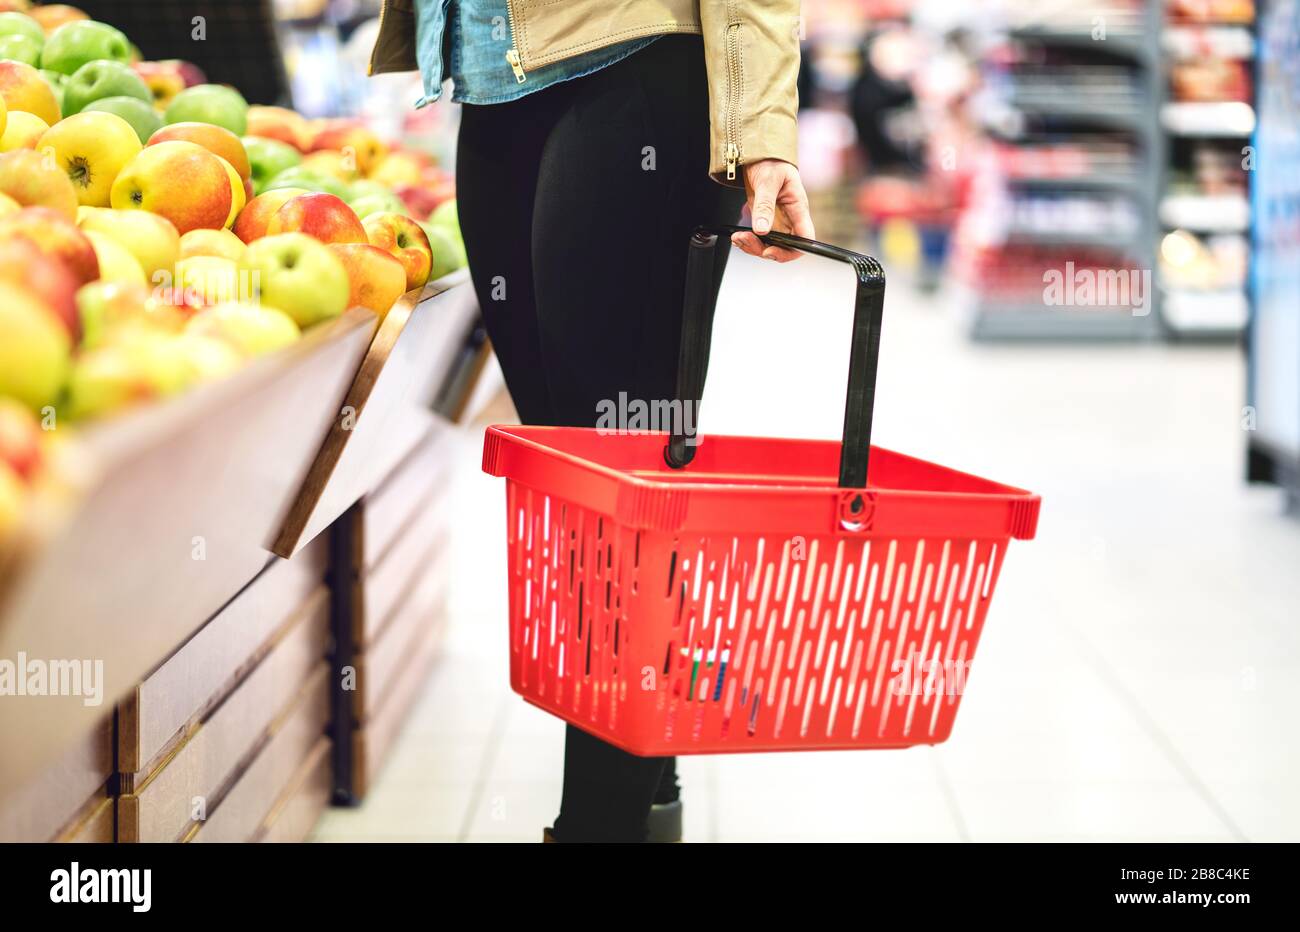 Concepto de venta al por menor, venta y consumismo. Cliente en la sección de verduras y frutas del supermercado eligiendo alimentos saludables. Mujer sosteniendo la cesta de la compra. Foto de stock